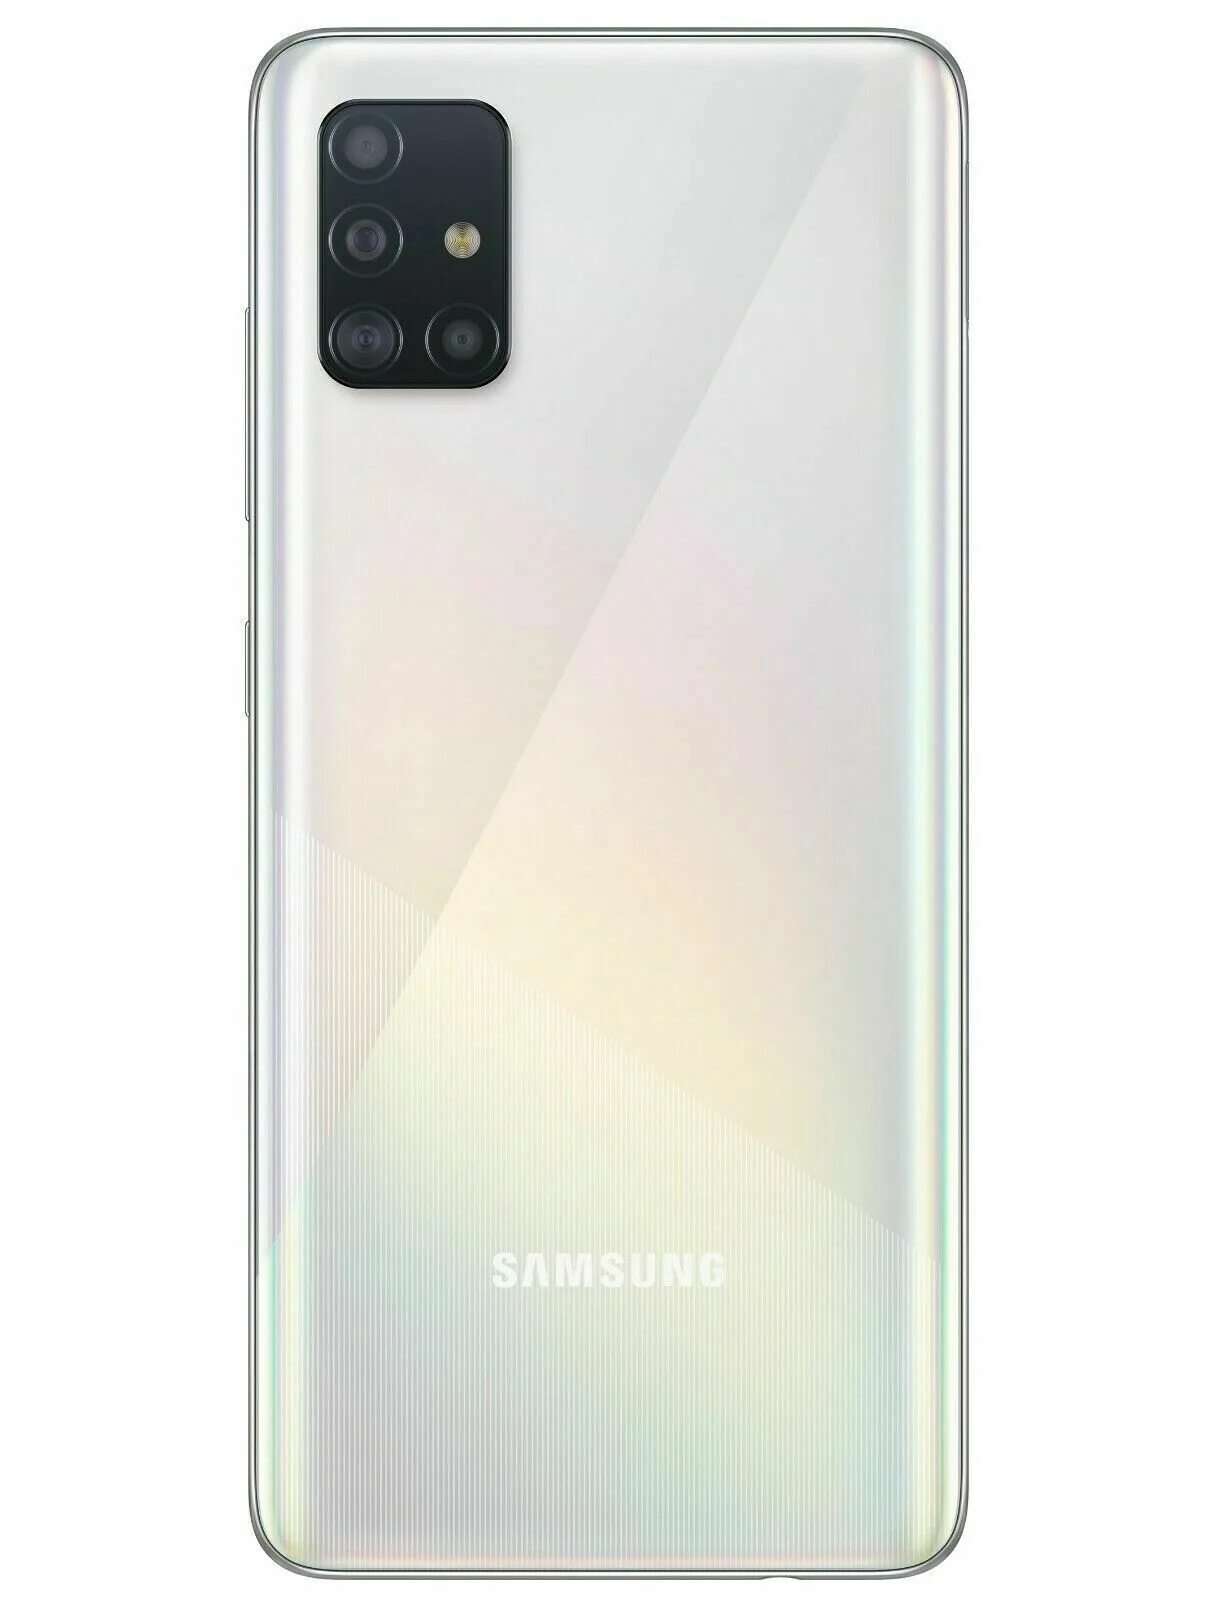 Samsung Galaxy a51 128gb. Samsung Galaxy a51 6/128gb. Samsung Galaxy a51 SM a515 128gb. Samsung Galaxy a51 64gb. Самсунг а 51 128 гб